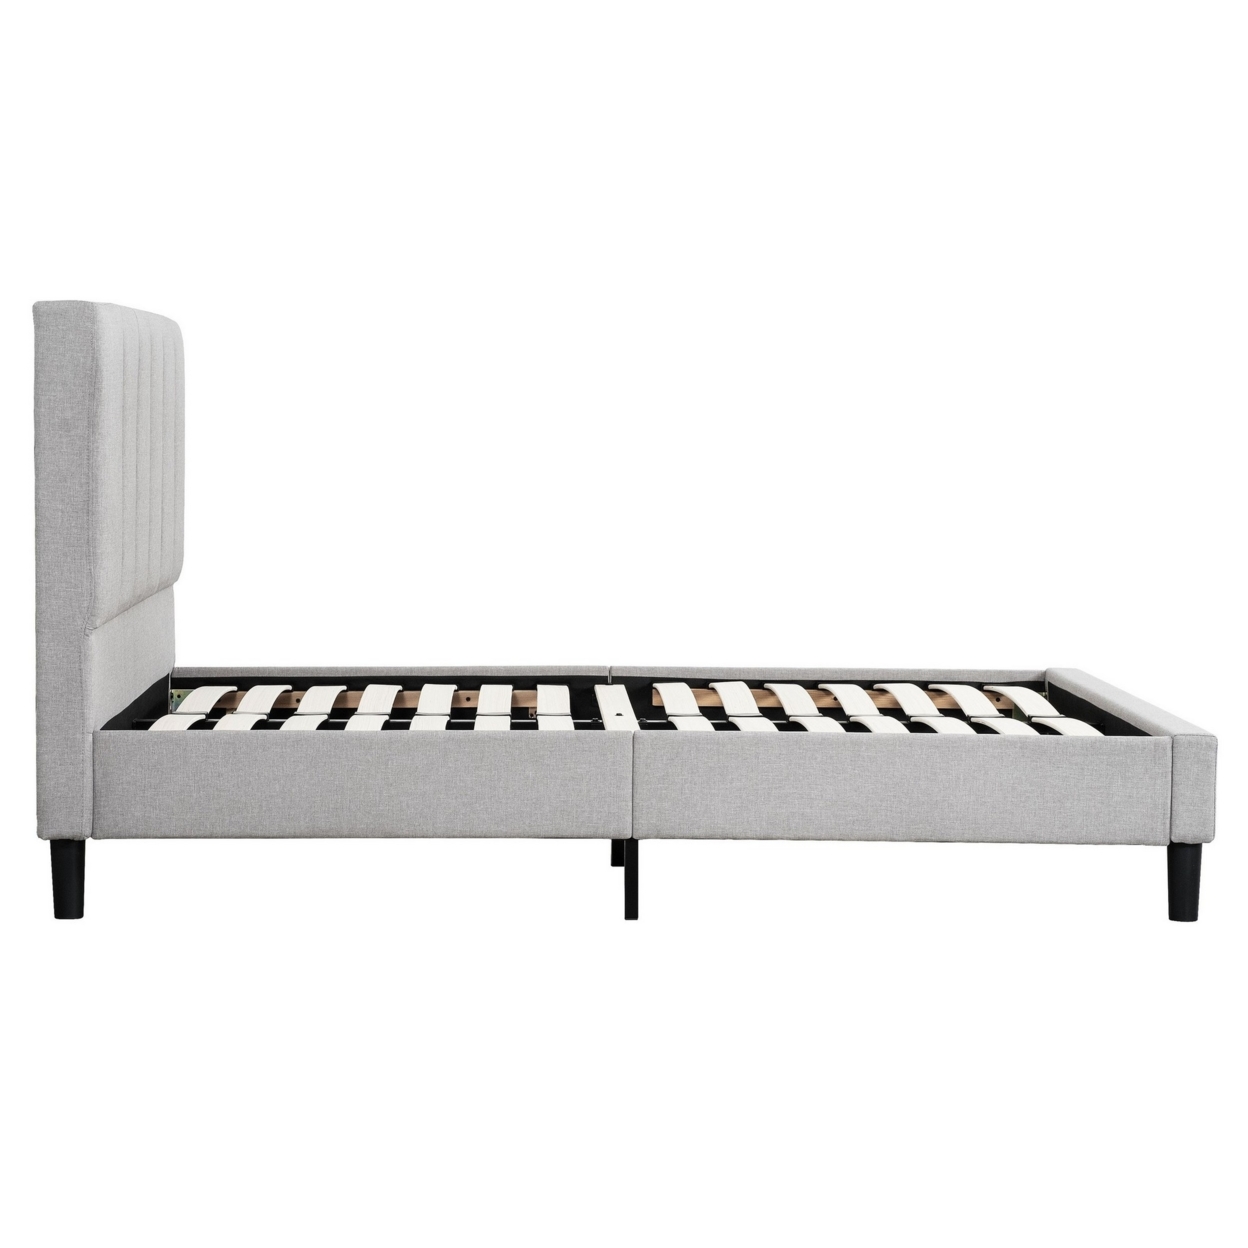 Heli Full Bed, Gray Linen Upholstered Frame, Vertical Tufted Headboard- Saltoro Sherpi